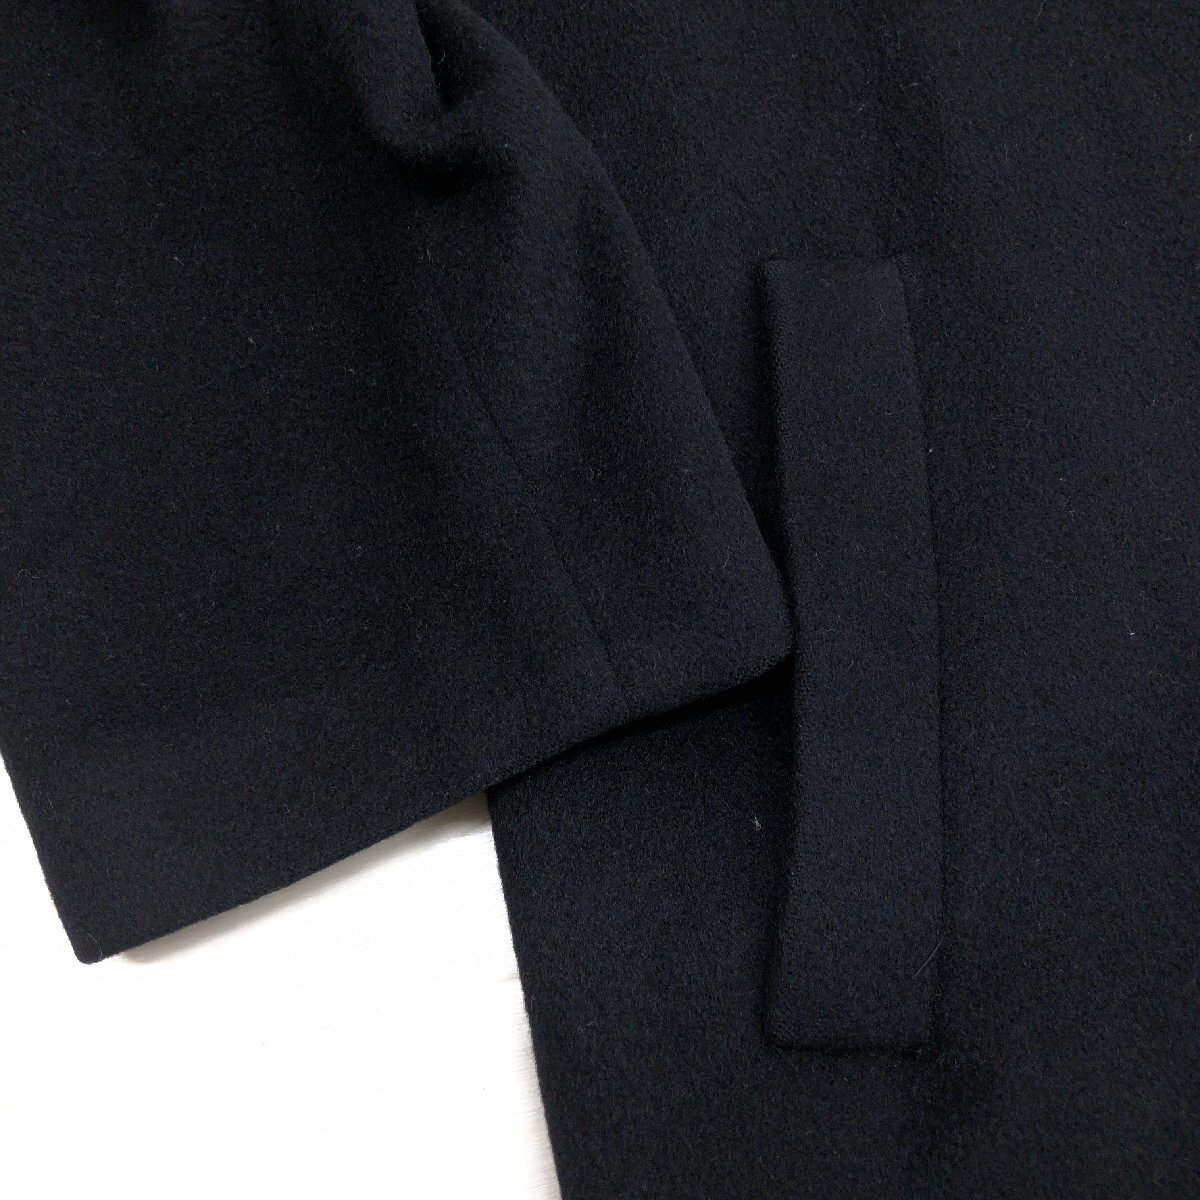 ◆mallage マロージュ 高級カシミヤ100% ロングコート F 黒 ブラック ウールコート カシミア 日本製 国内正規品 レディース 女性用 婦人の画像6